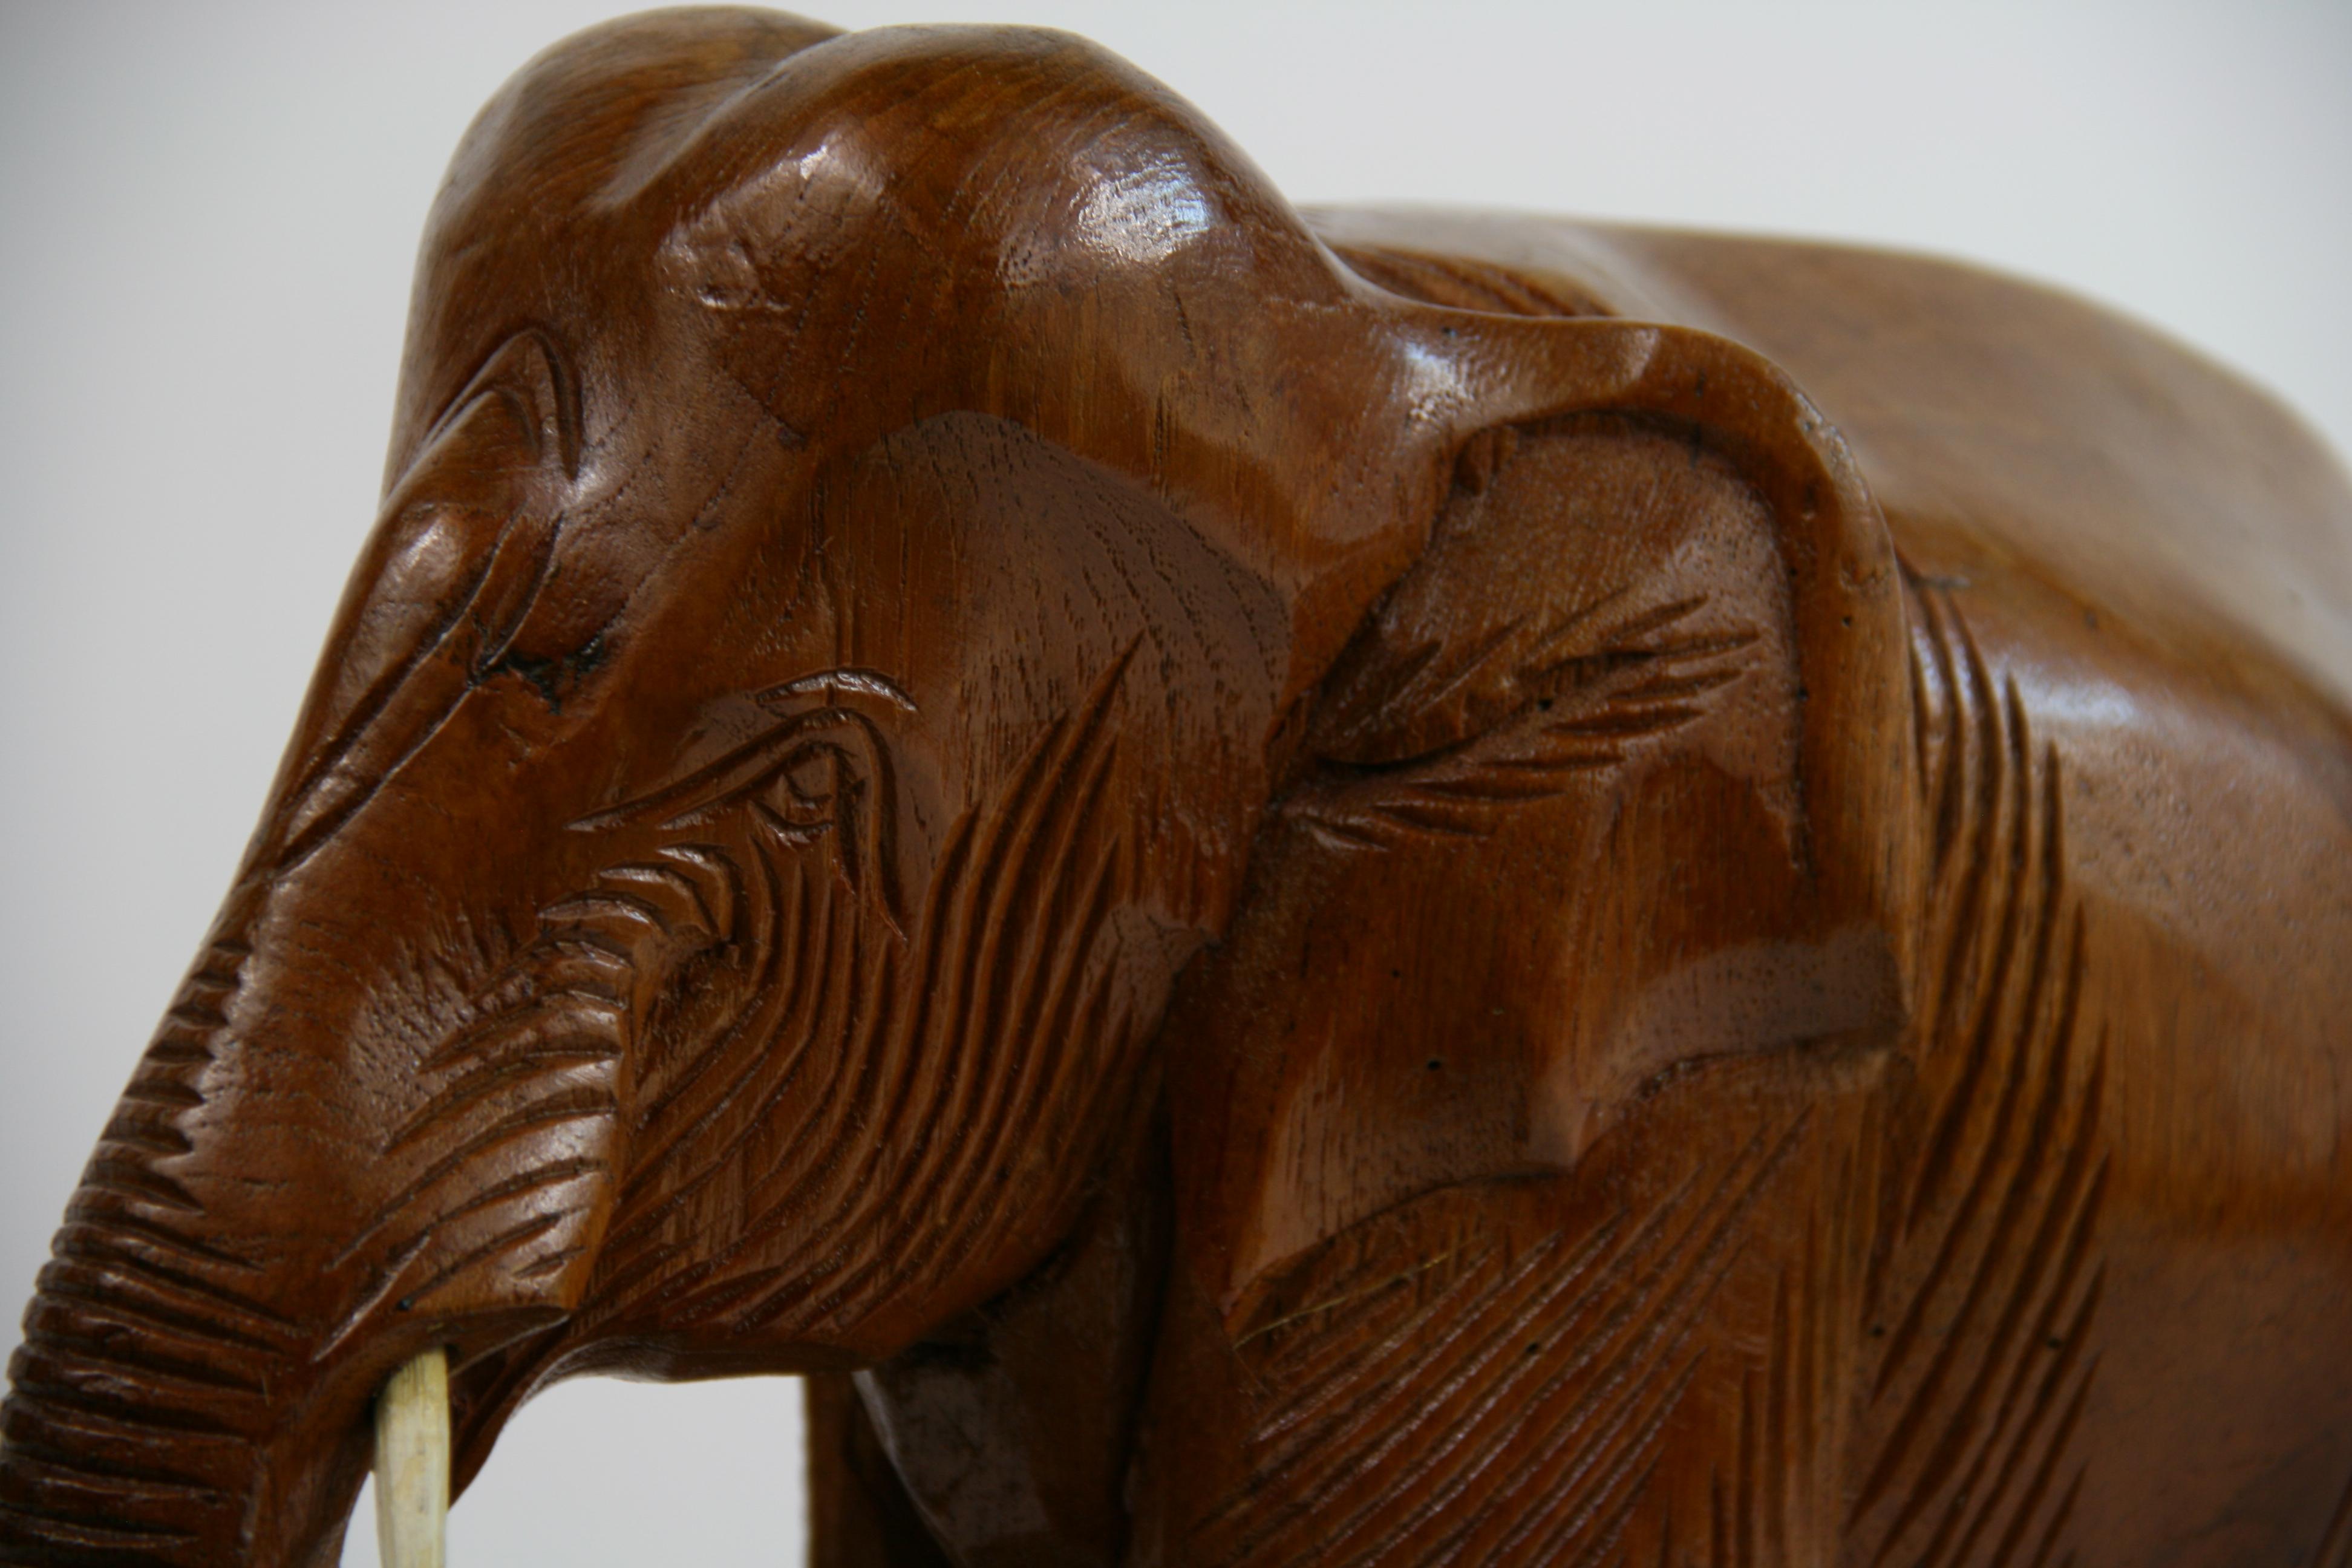 Hardwood Hand Carved Elephant Sculpture